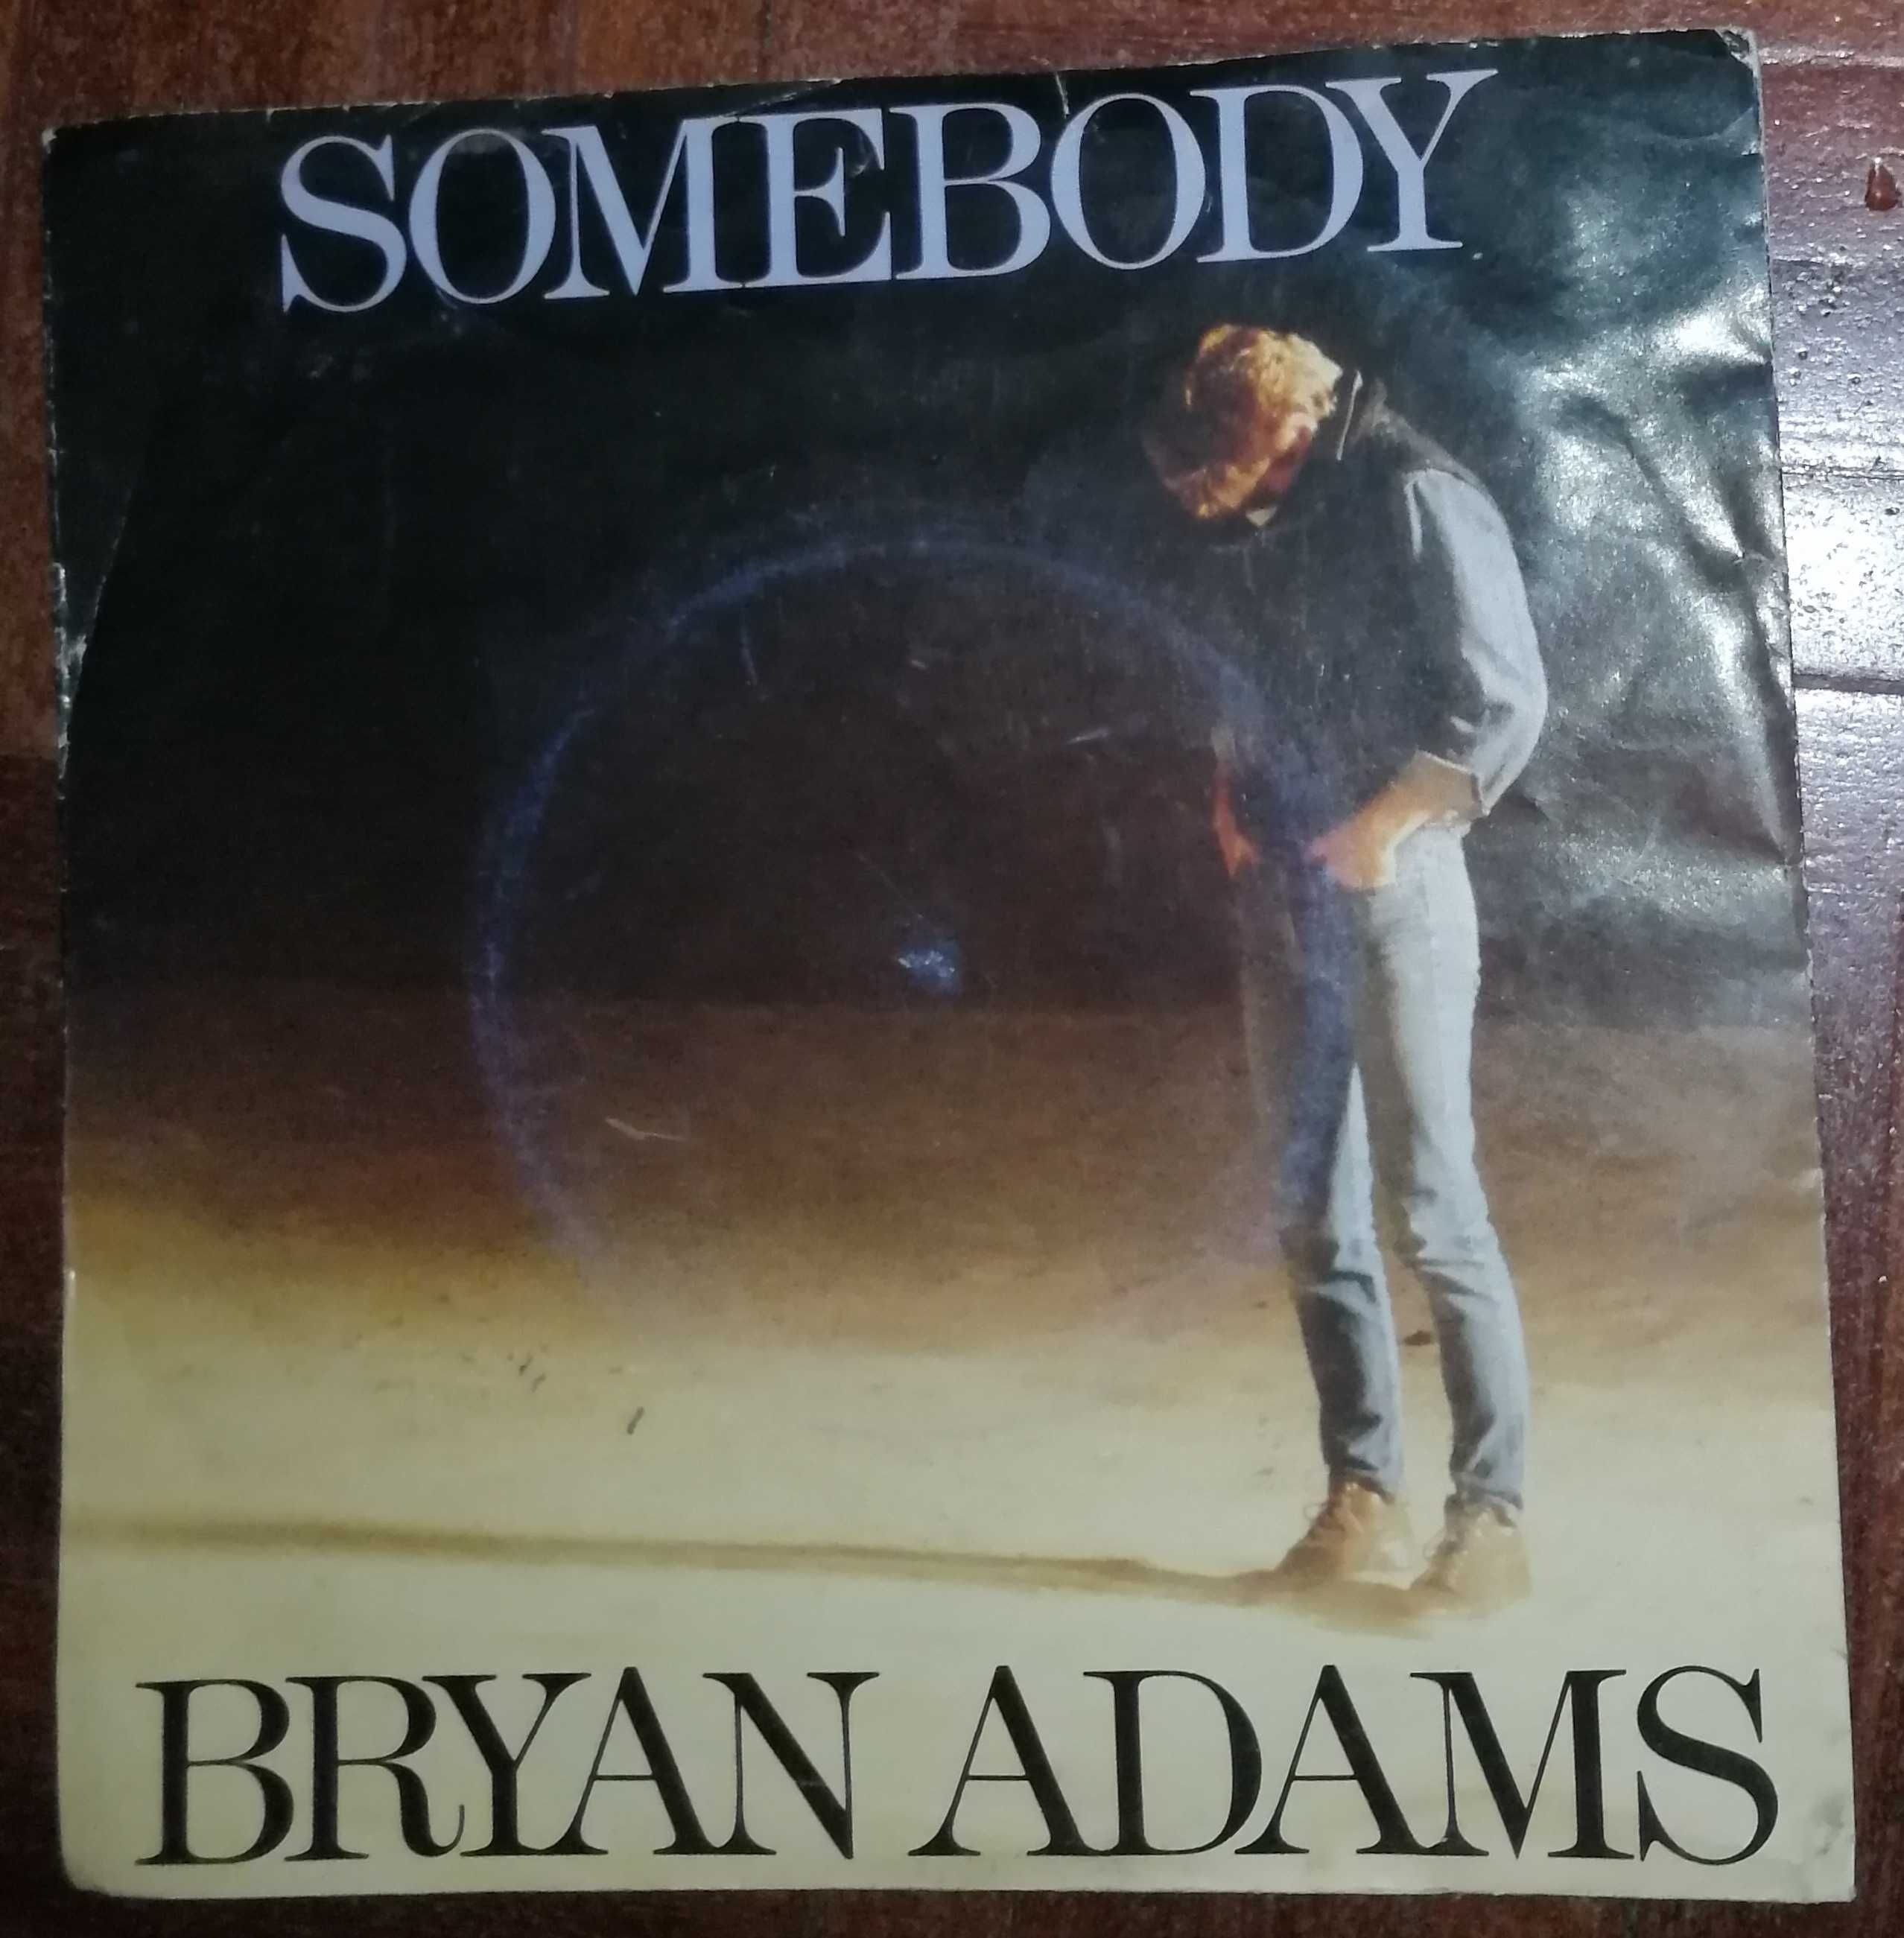 Bryan Adams - Somebody